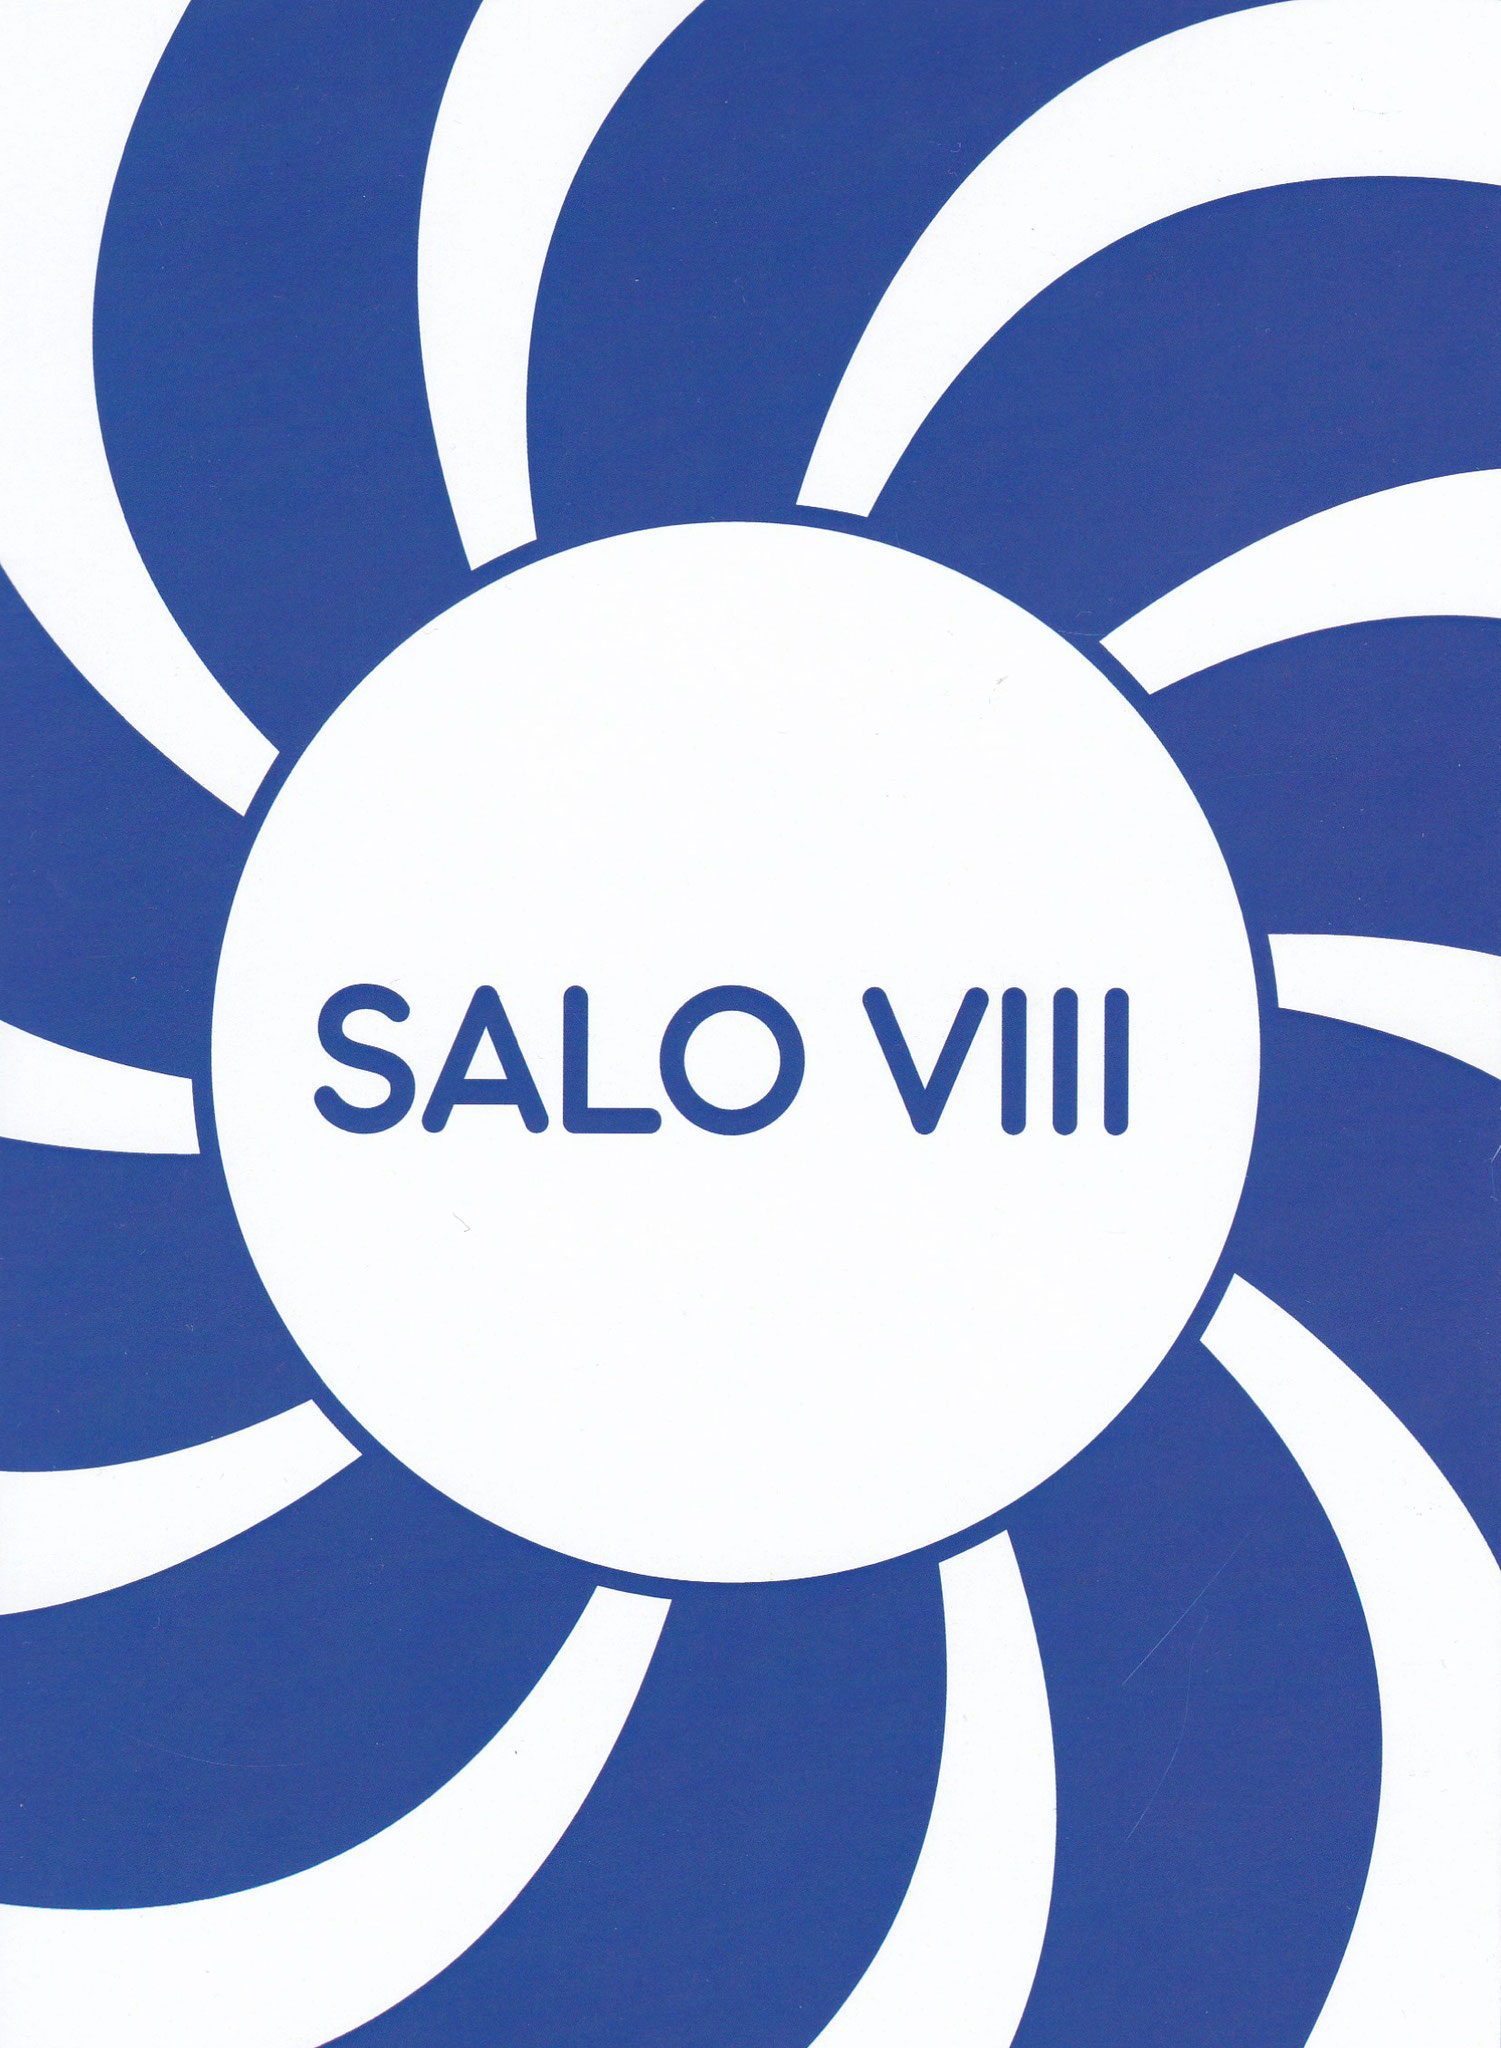 Salo VIII, Catalogue de 84 pages, 14.7x21cm, Edition Les Salaisons, 2020